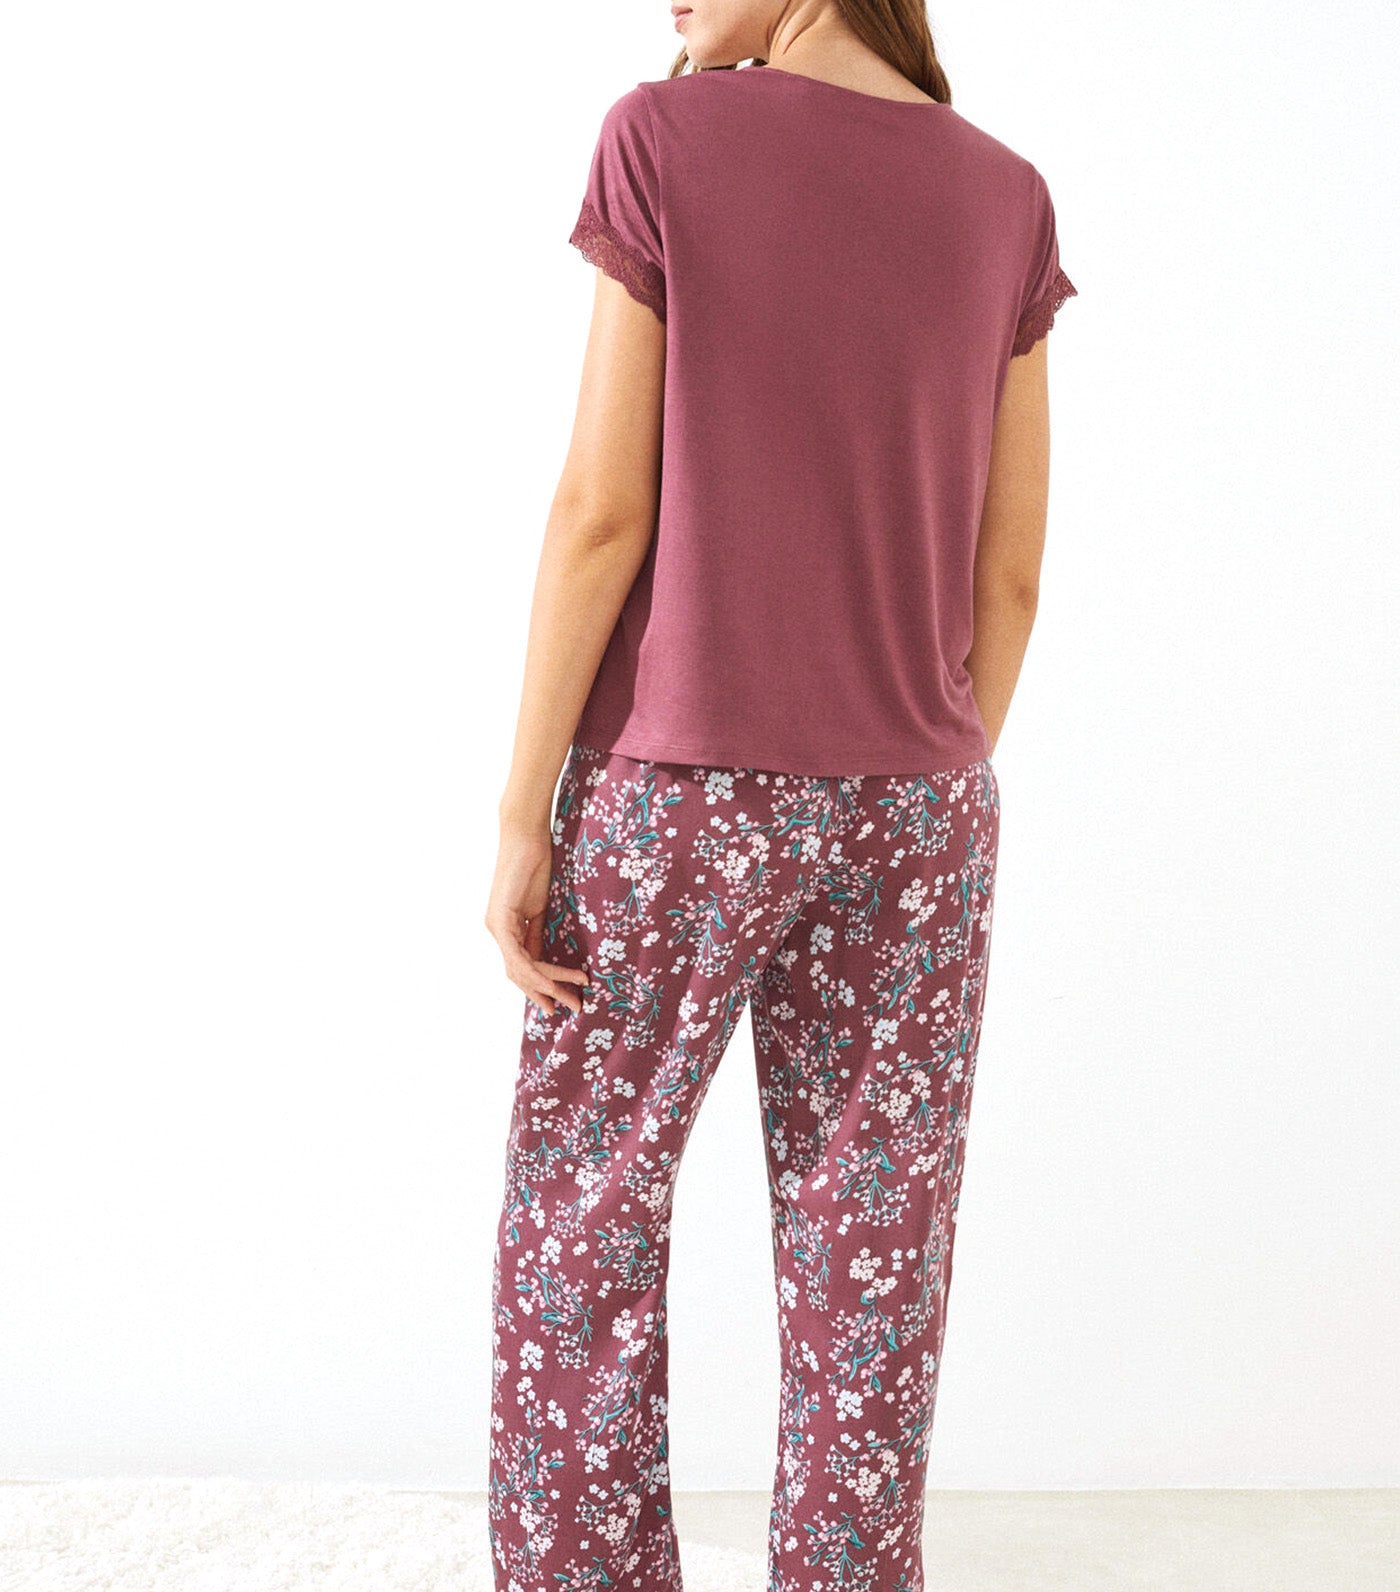 Long Printed Lace Pajamas Set Pink